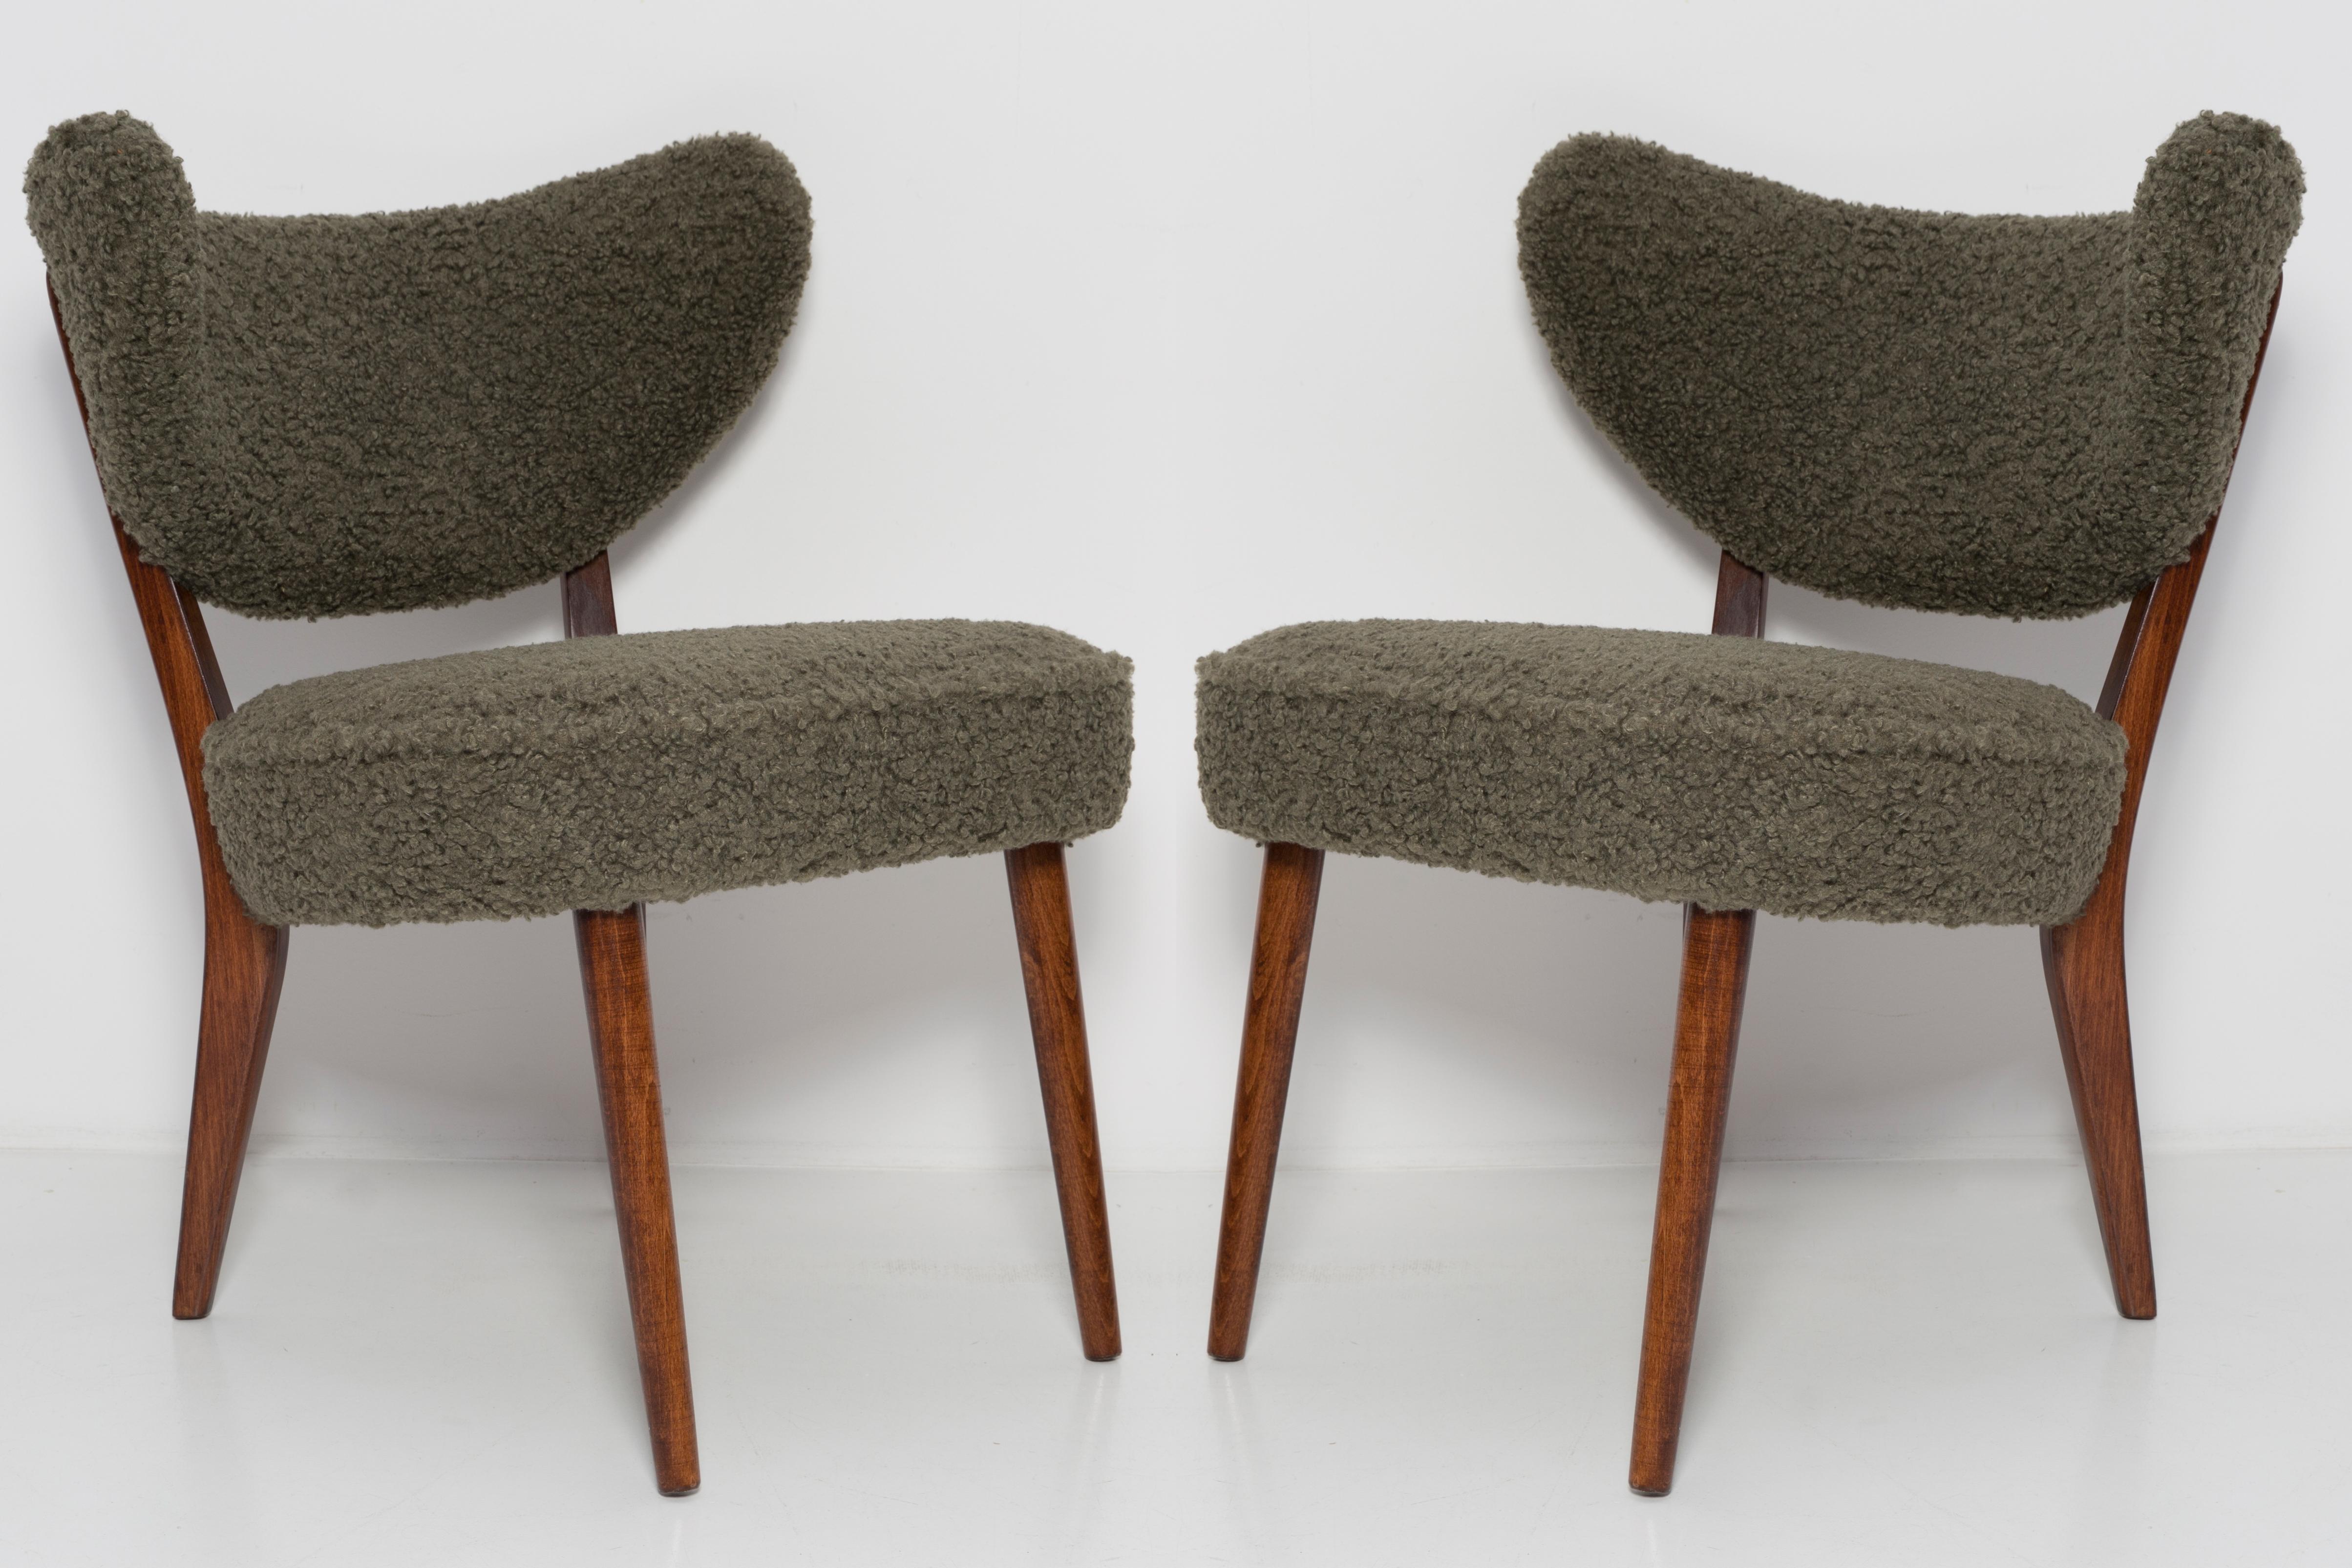 Sièges club élastiques, très confortables et stables.
Il s'agit de chaises contemporaines inspirées du style des années 1960. 
Elles peuvent être utilisées comme fauteuils et chaises à manger. 

La chaise a été conçue par Vintola Studio, une marque